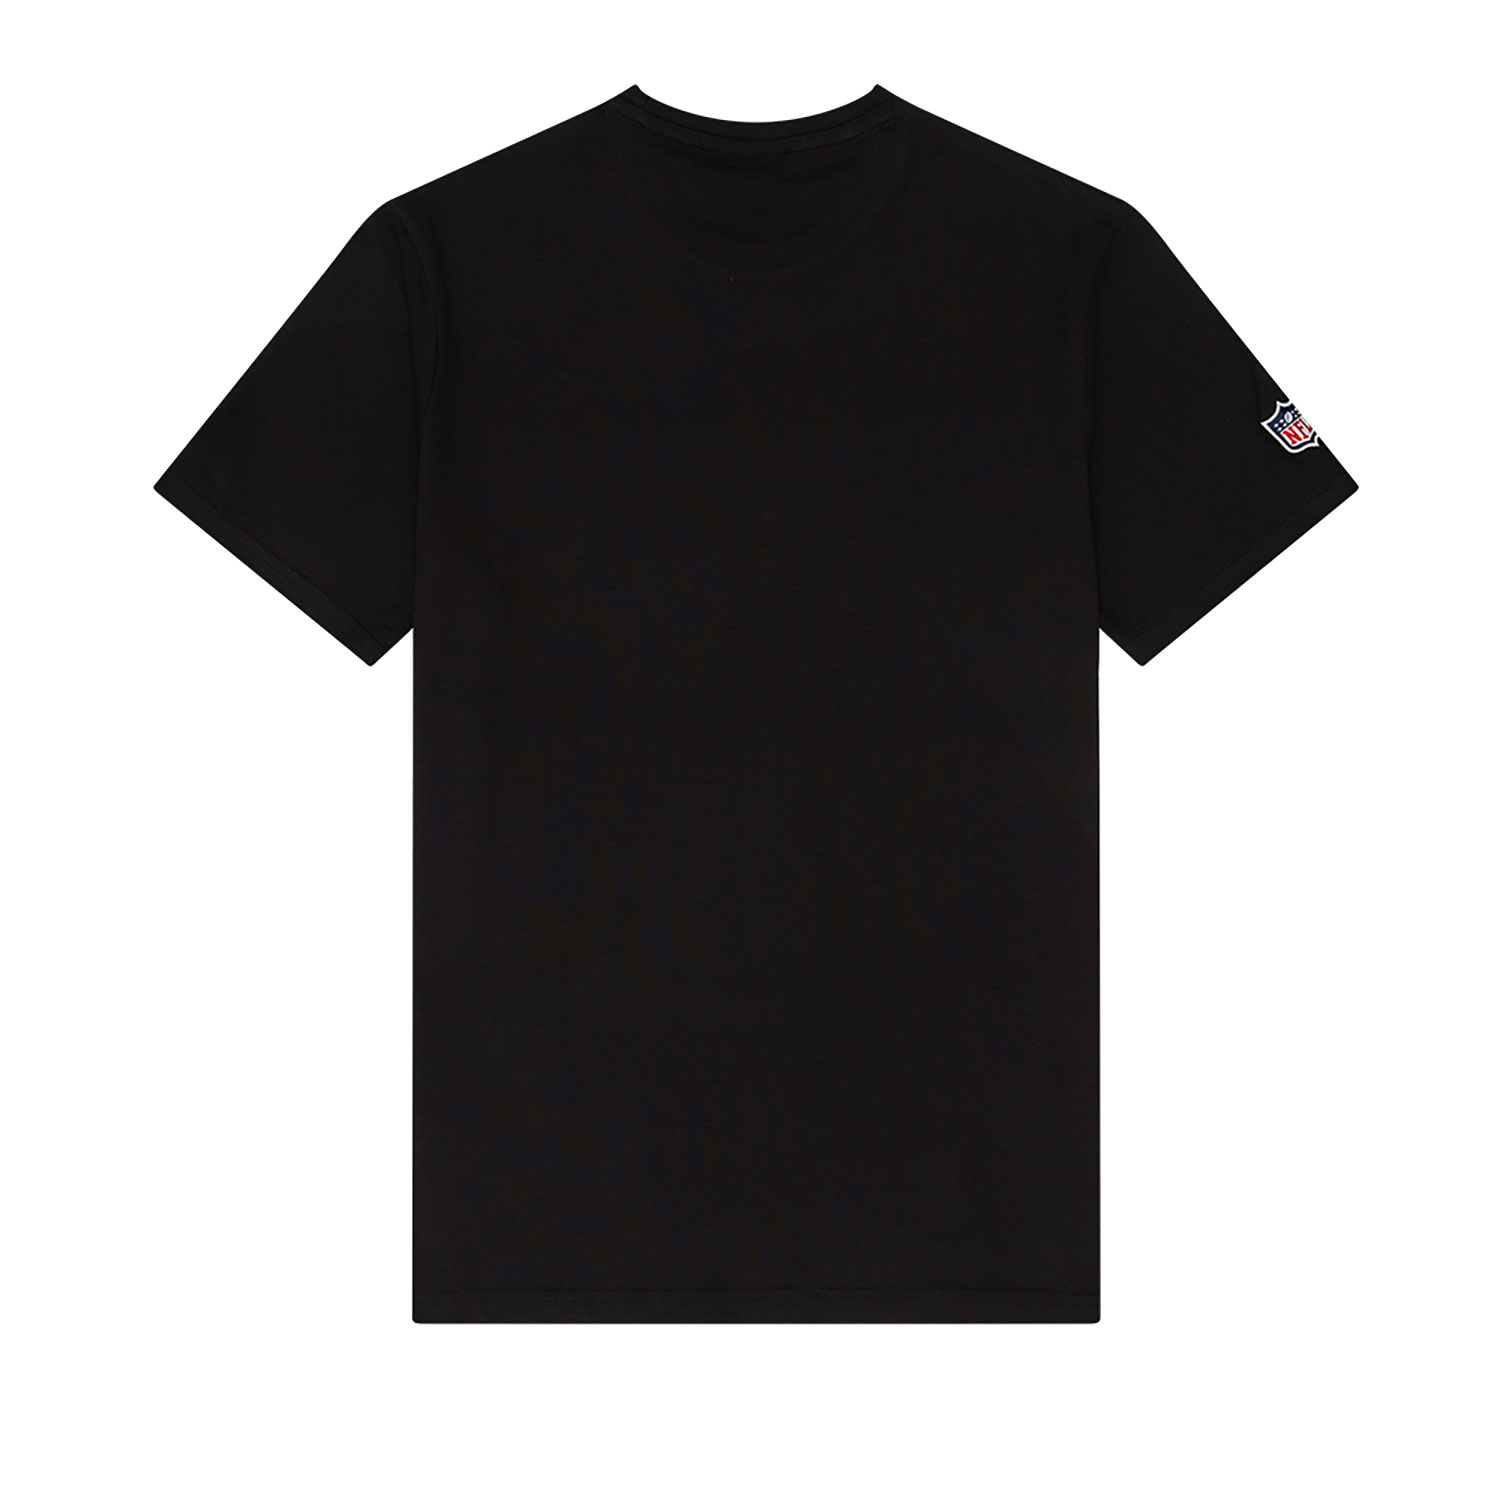 Las Vegas Raiders NFL Black T-Shirt